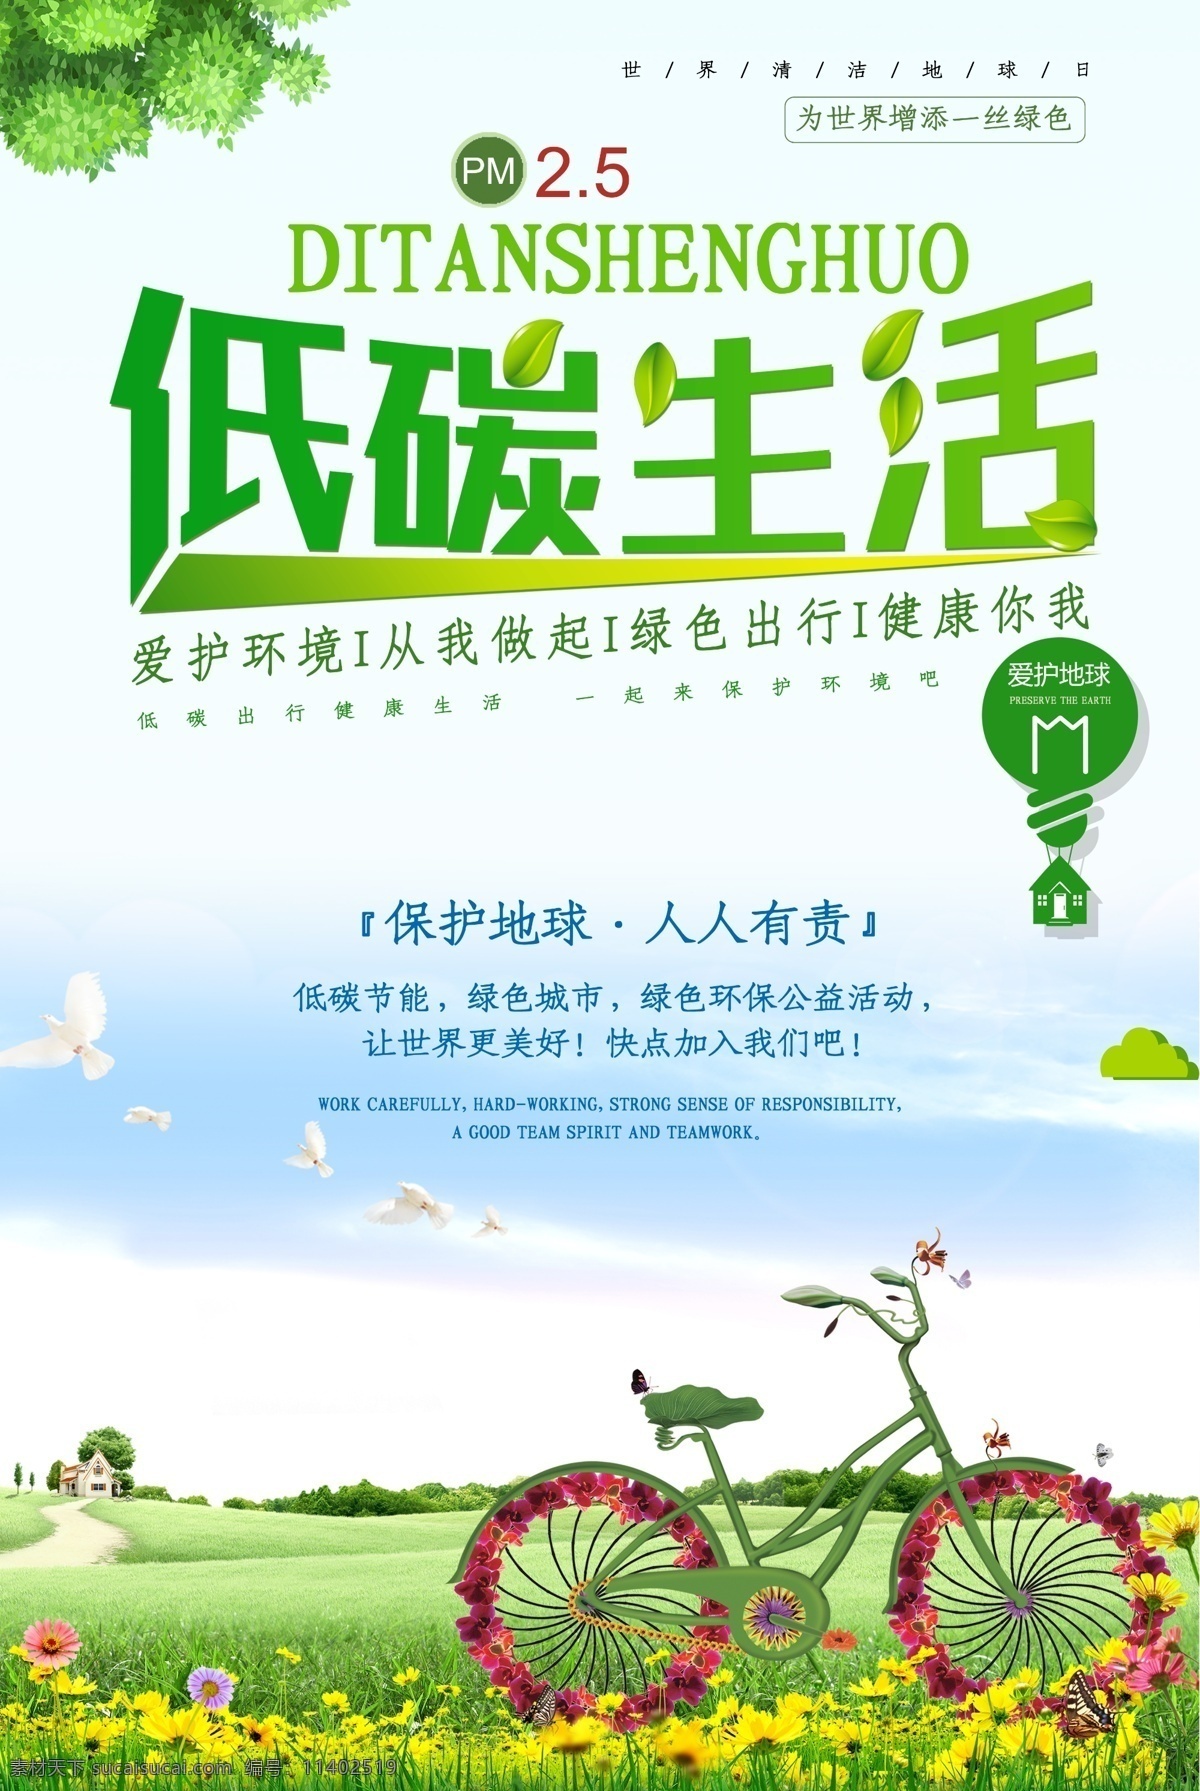 健康生活 生活方式 和谐生活 健康中国 绿色展板